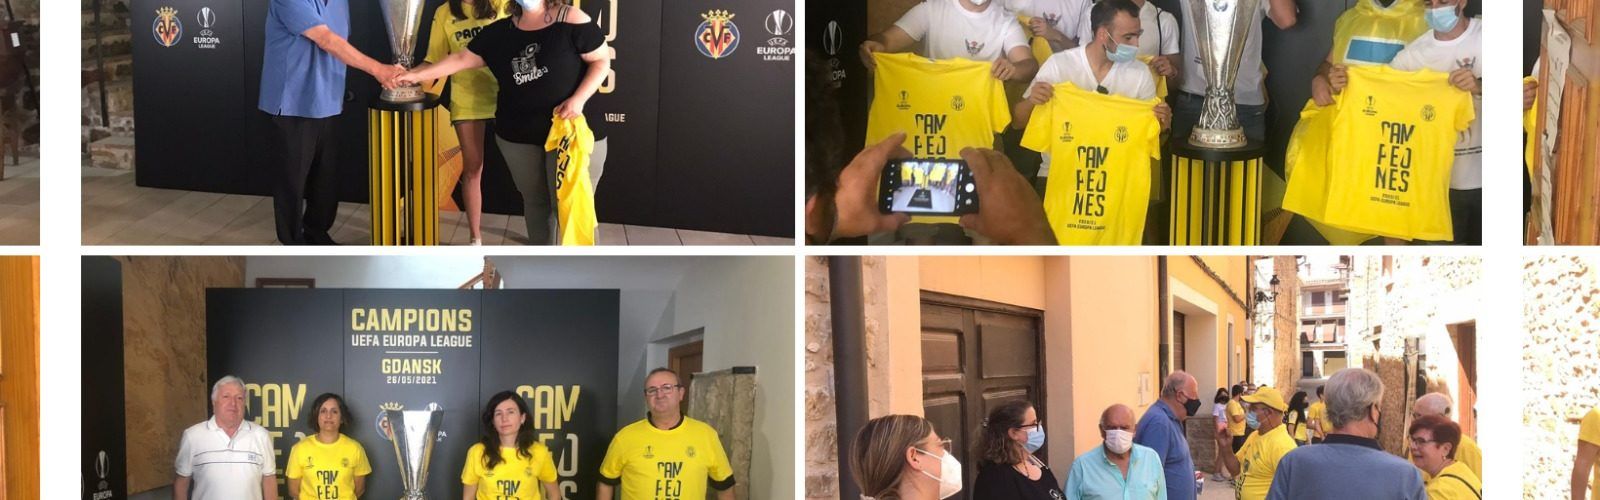 La copa de l’Europa League del Villarreal CF, exposada i admirada a Alt Maestrat